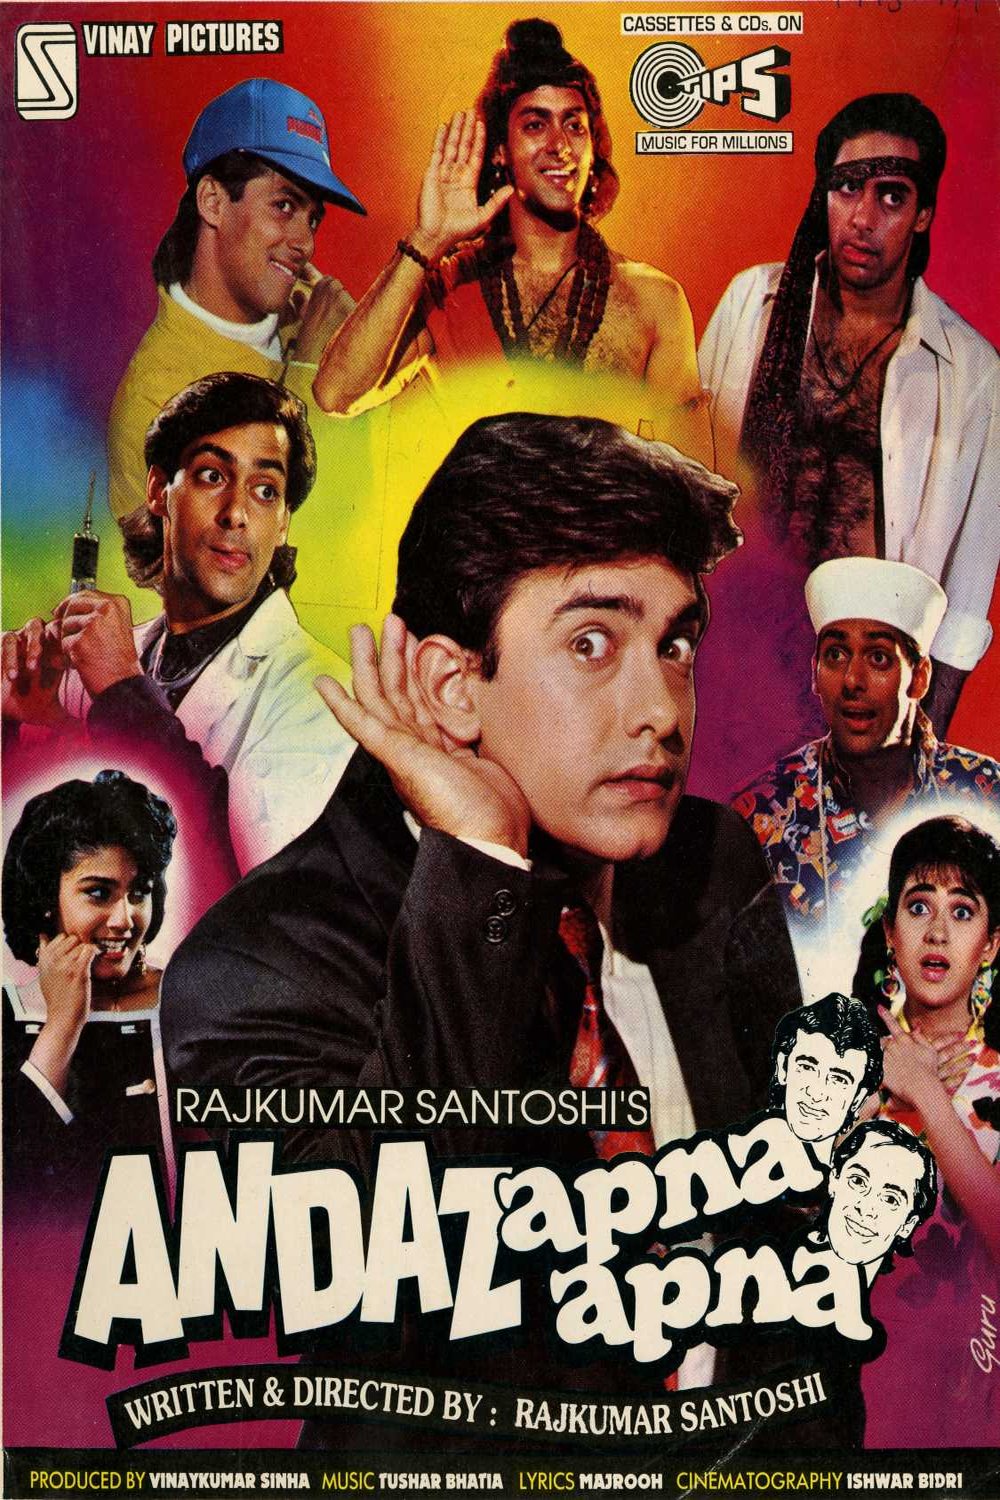 L'affiche du film Andaz Apna Apna